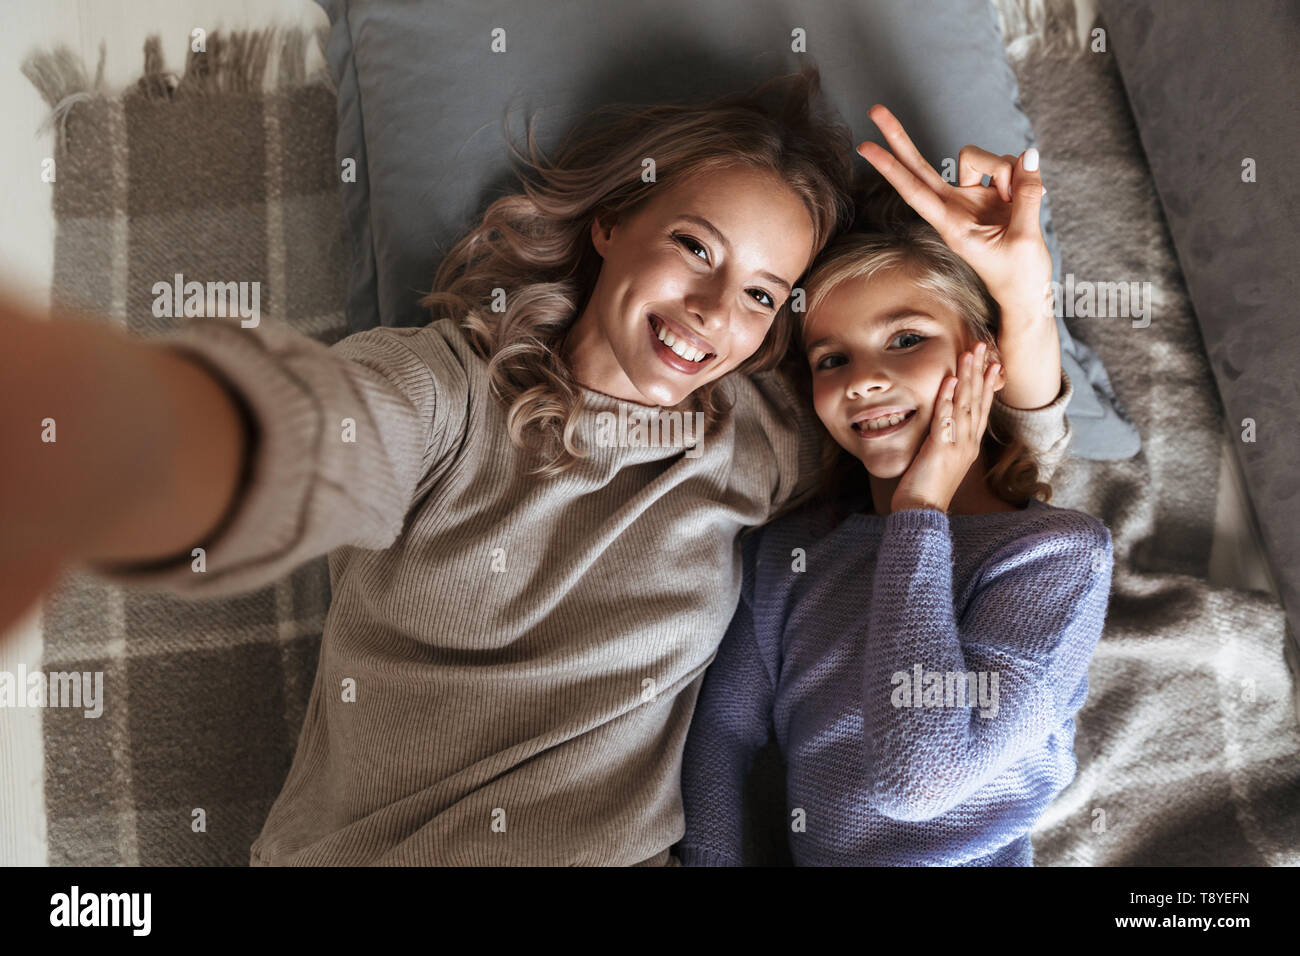 Bild einer glücklichen jungen Frau mit ihrer kleinen Schwester zuhause zu Hause nehmen eine selfie durch die Kamera. Stockfoto